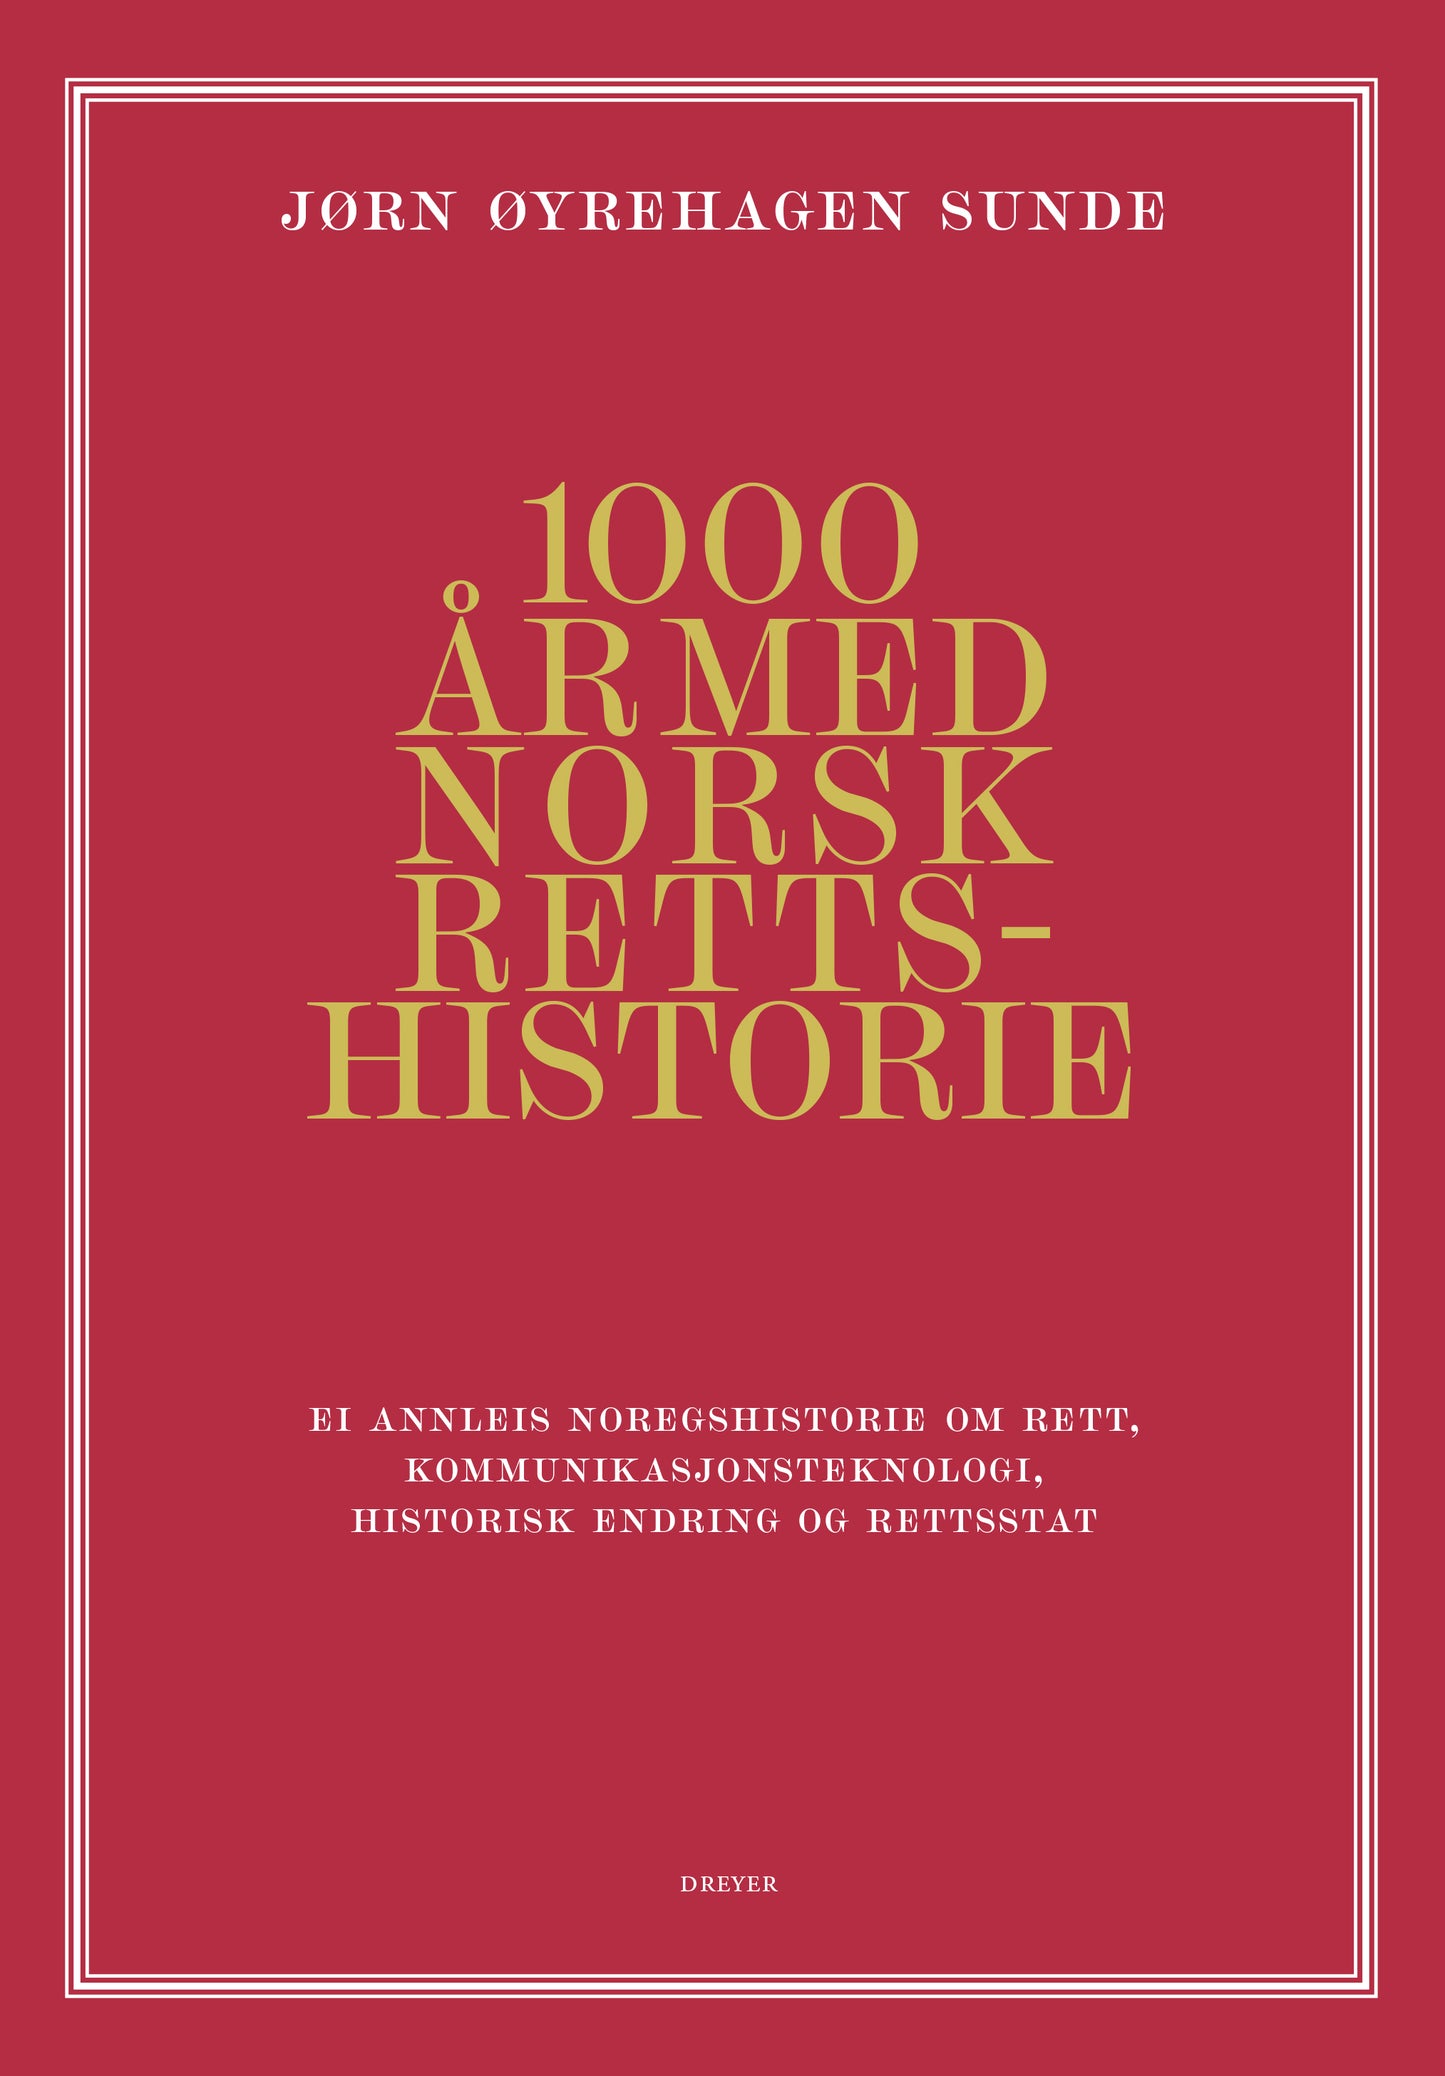 1000 år med norsk rettshistorie